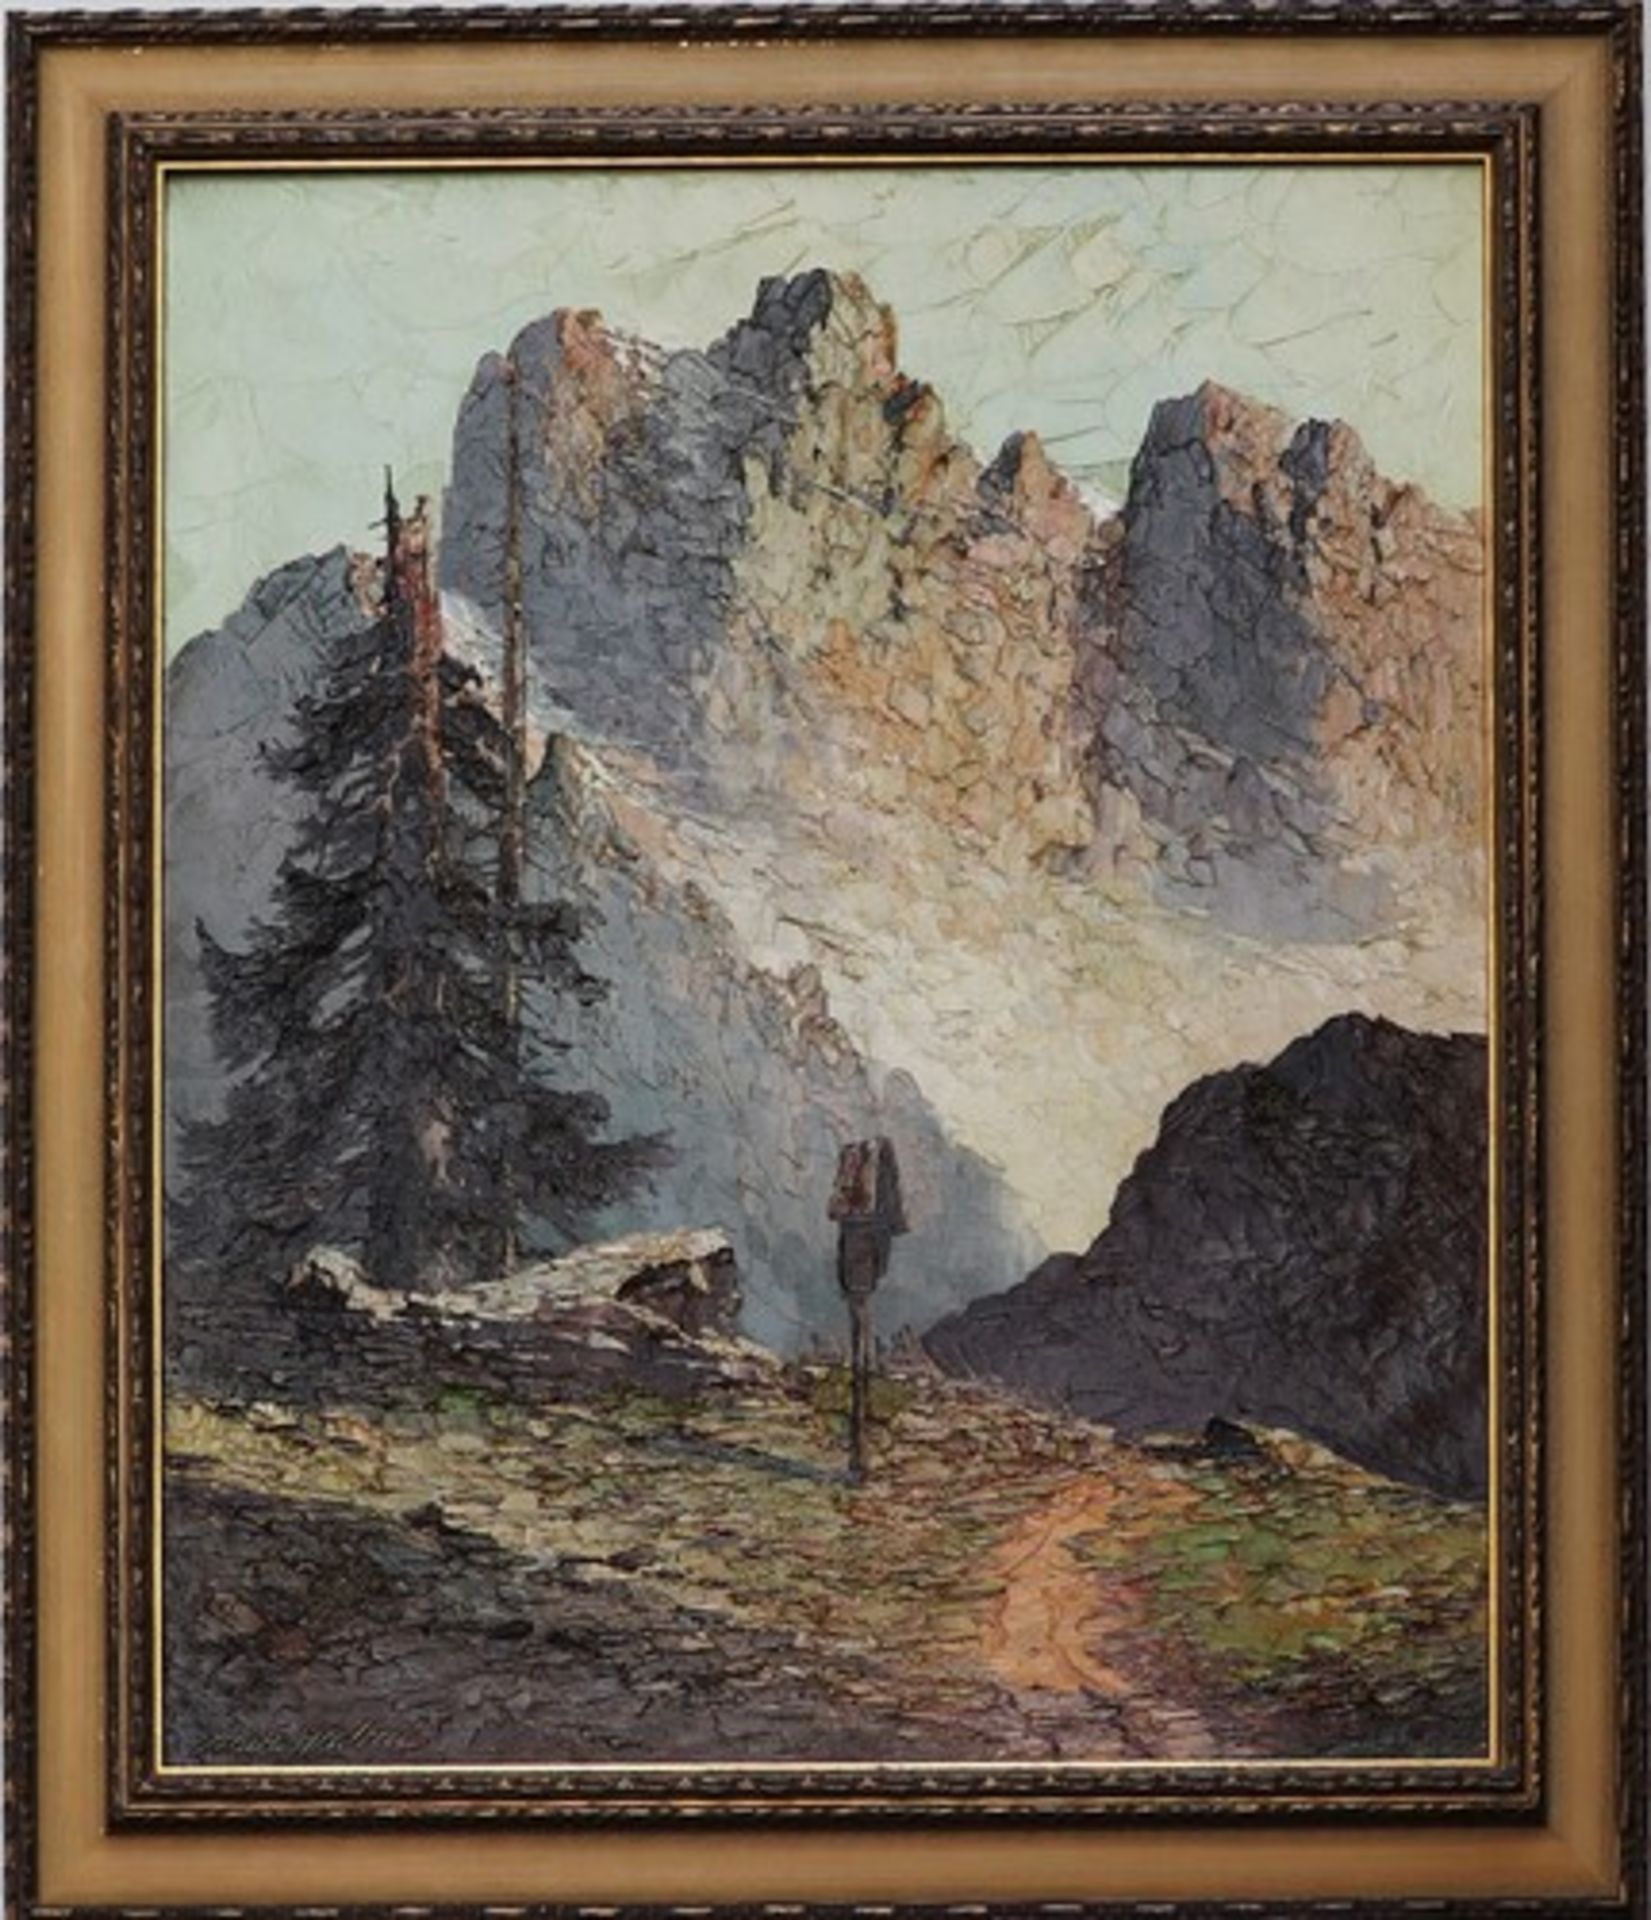 Graboné, Arnold"Palagruppe - Dolomiten", Öl/Lwd., breiter, pastoser Farbauftrag in